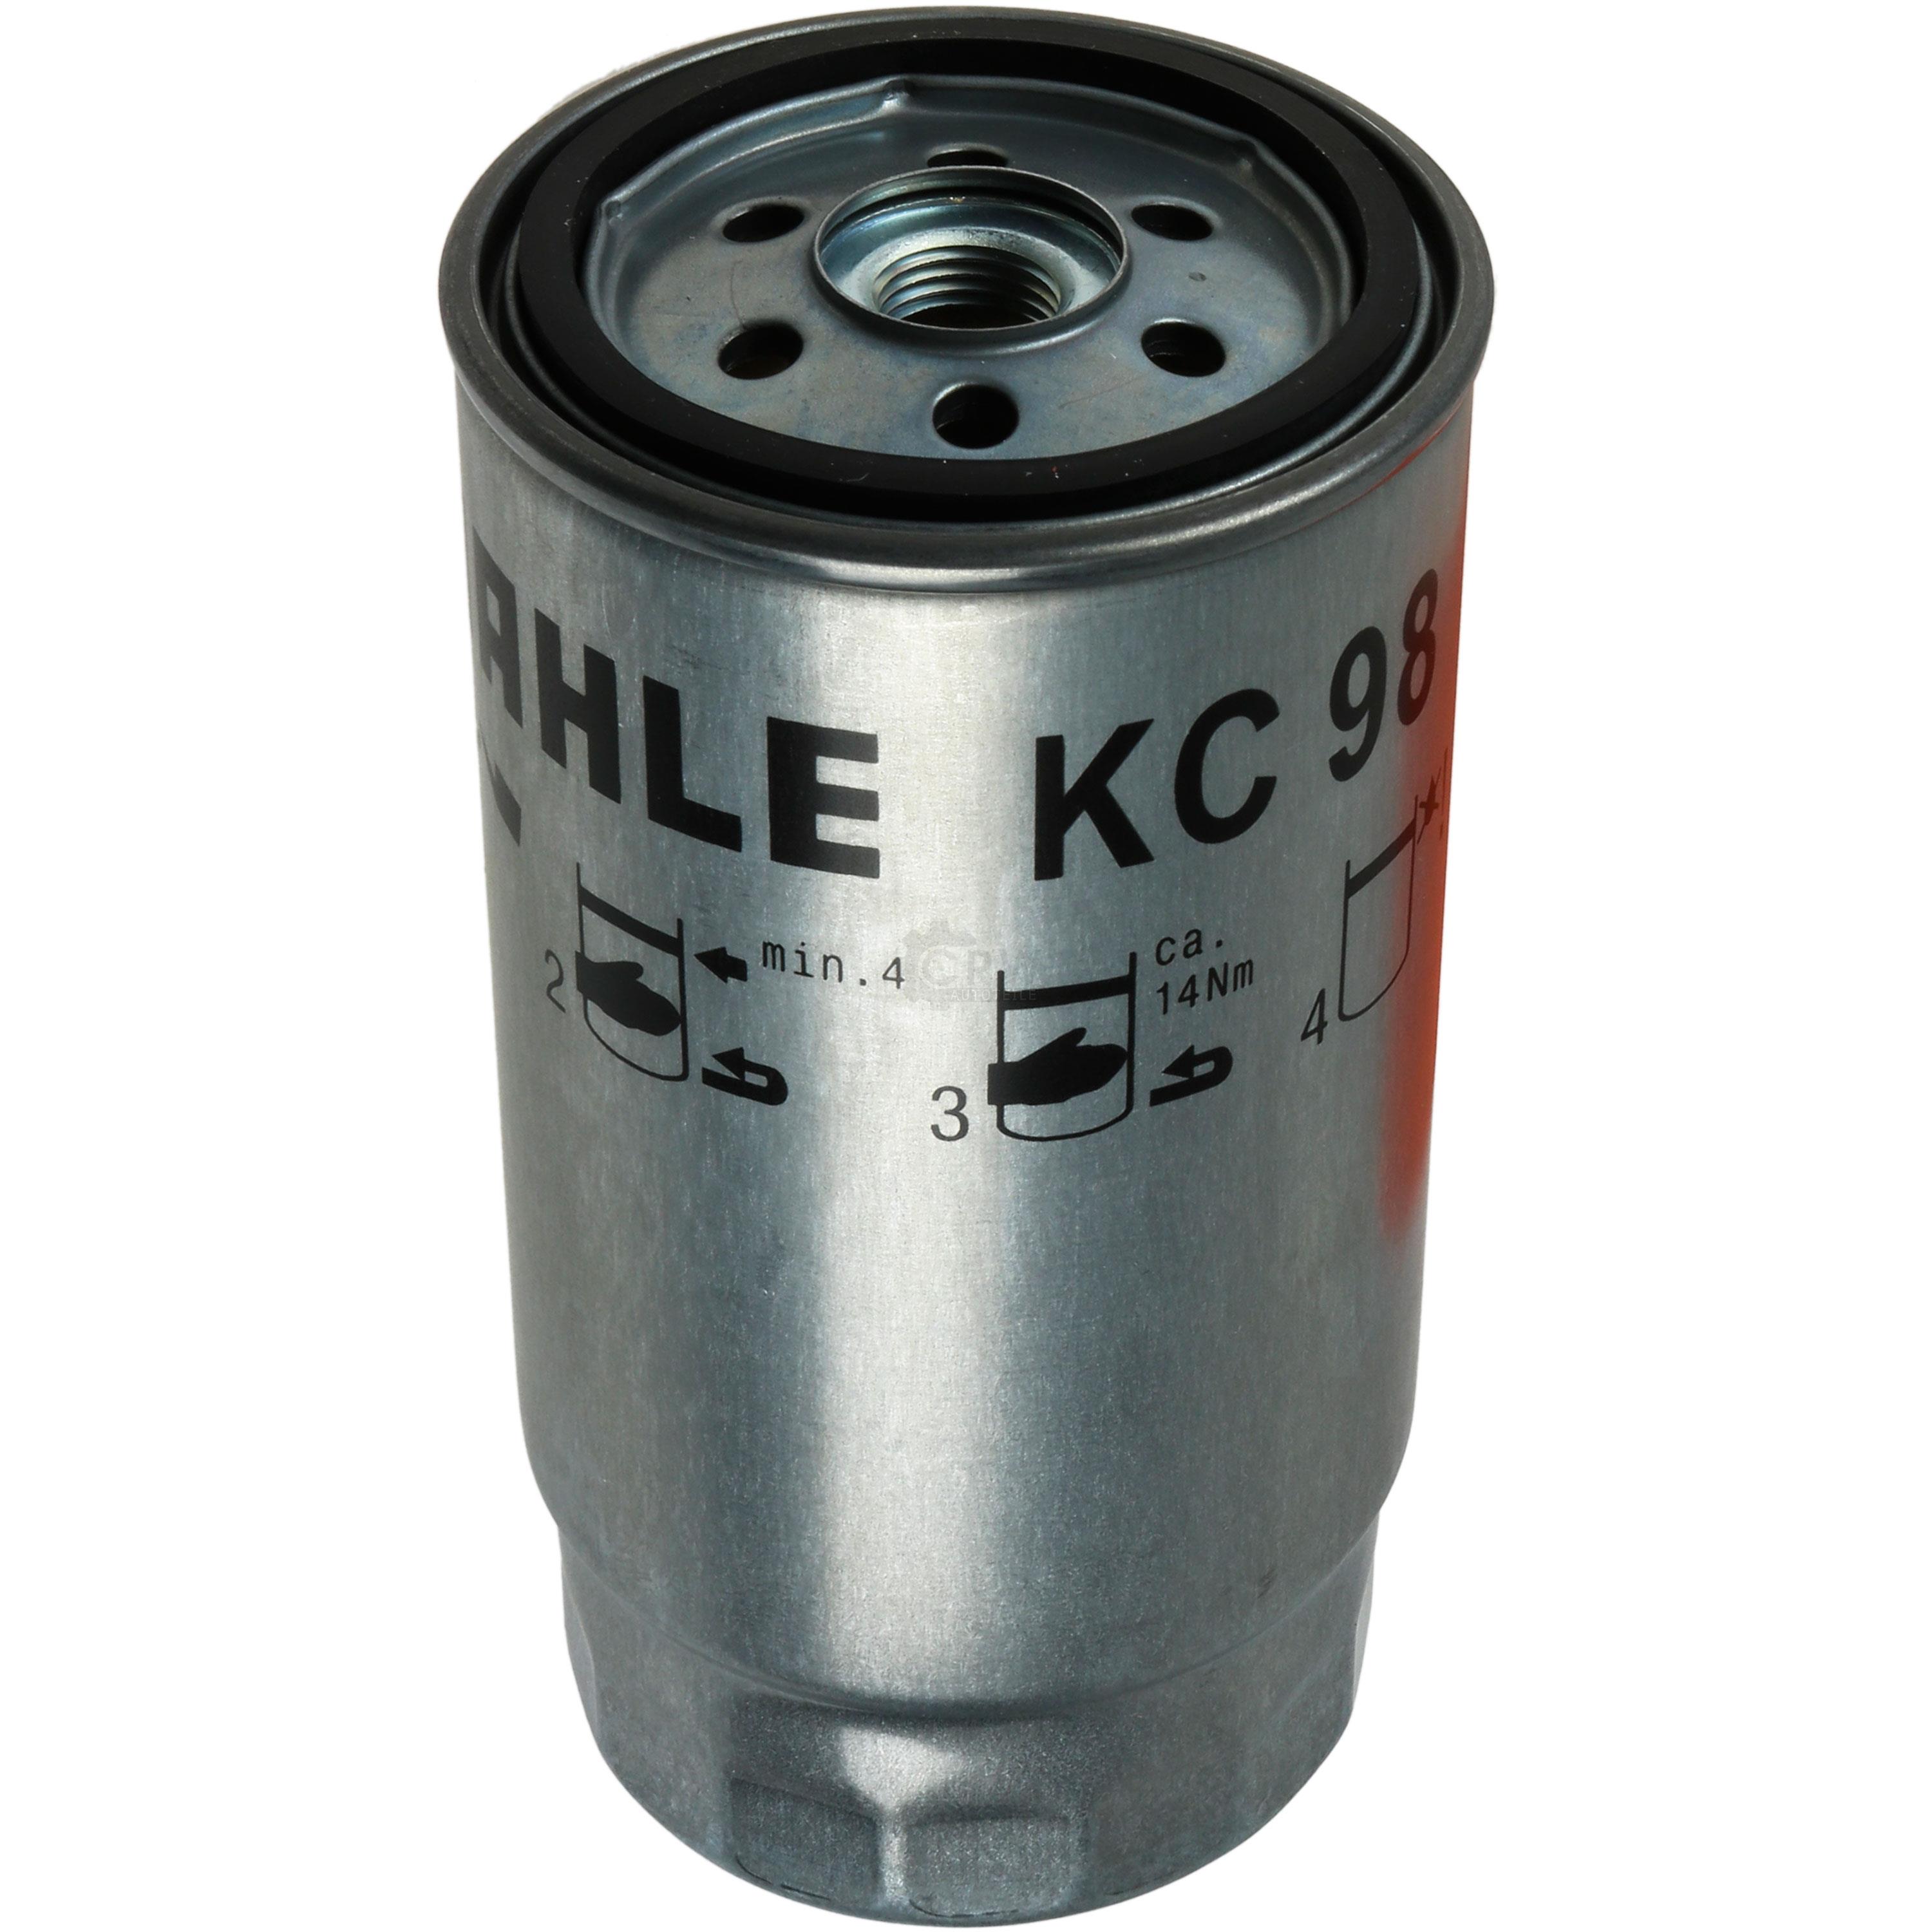 MAHLE / KNECHT KC 98 Kraftstofffilter Filter Fuel